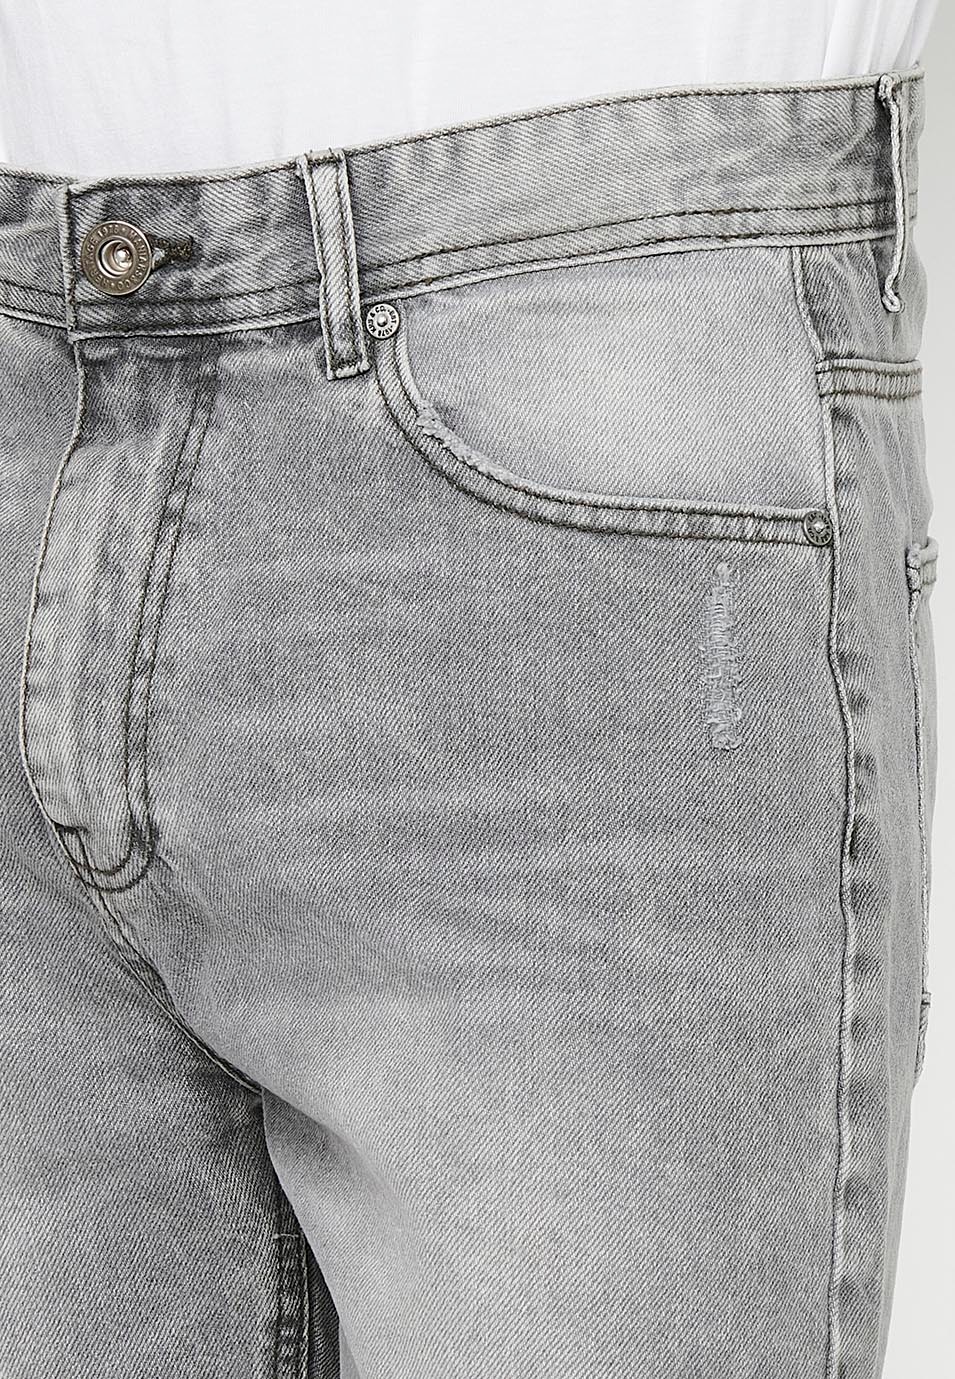 Comfort Fit Denim Bermuda Shorts, gray color for men